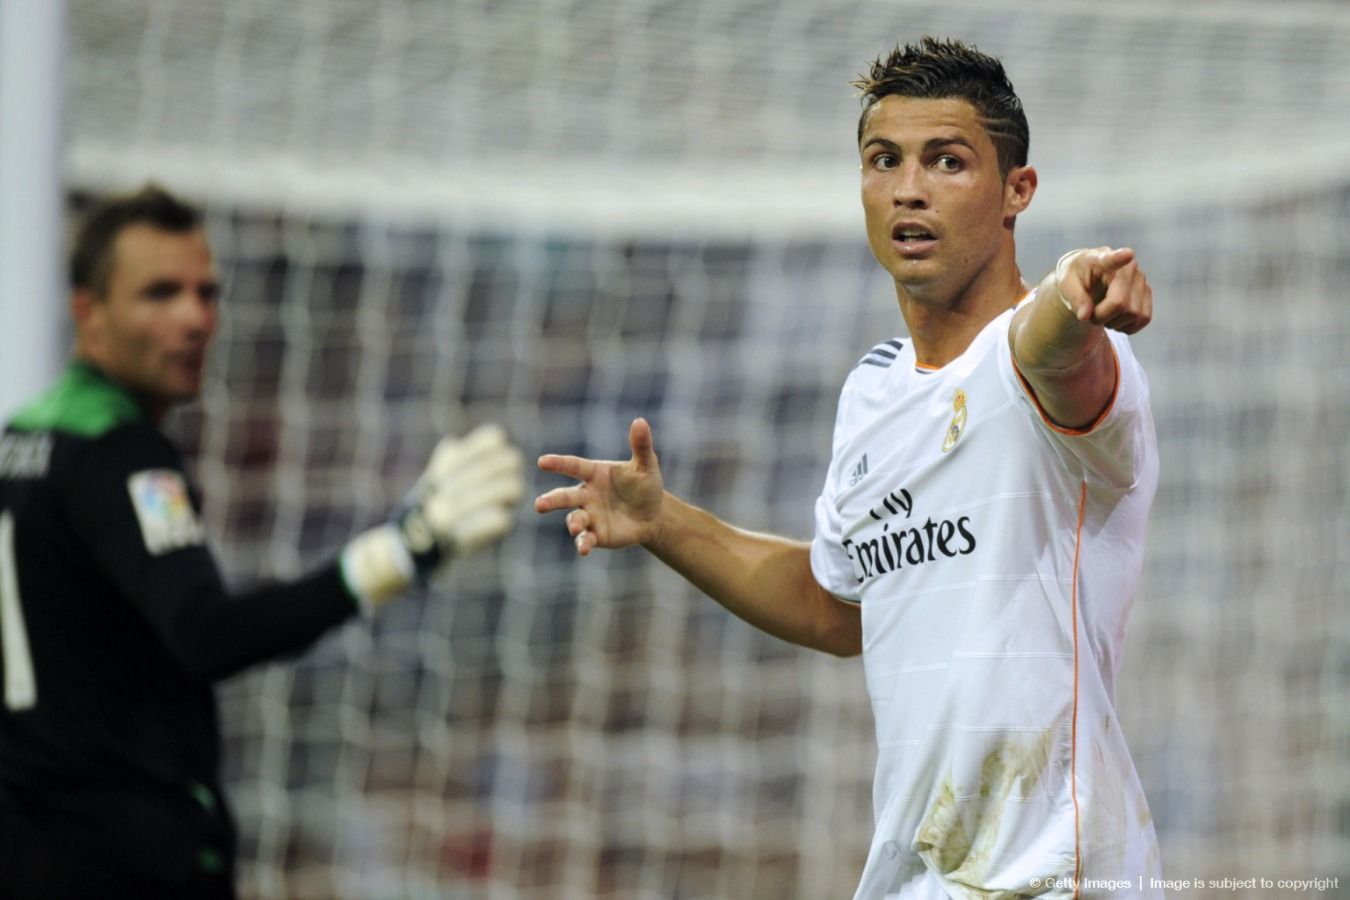 The Soccer Debate of the Era: Messi or Ronaldo